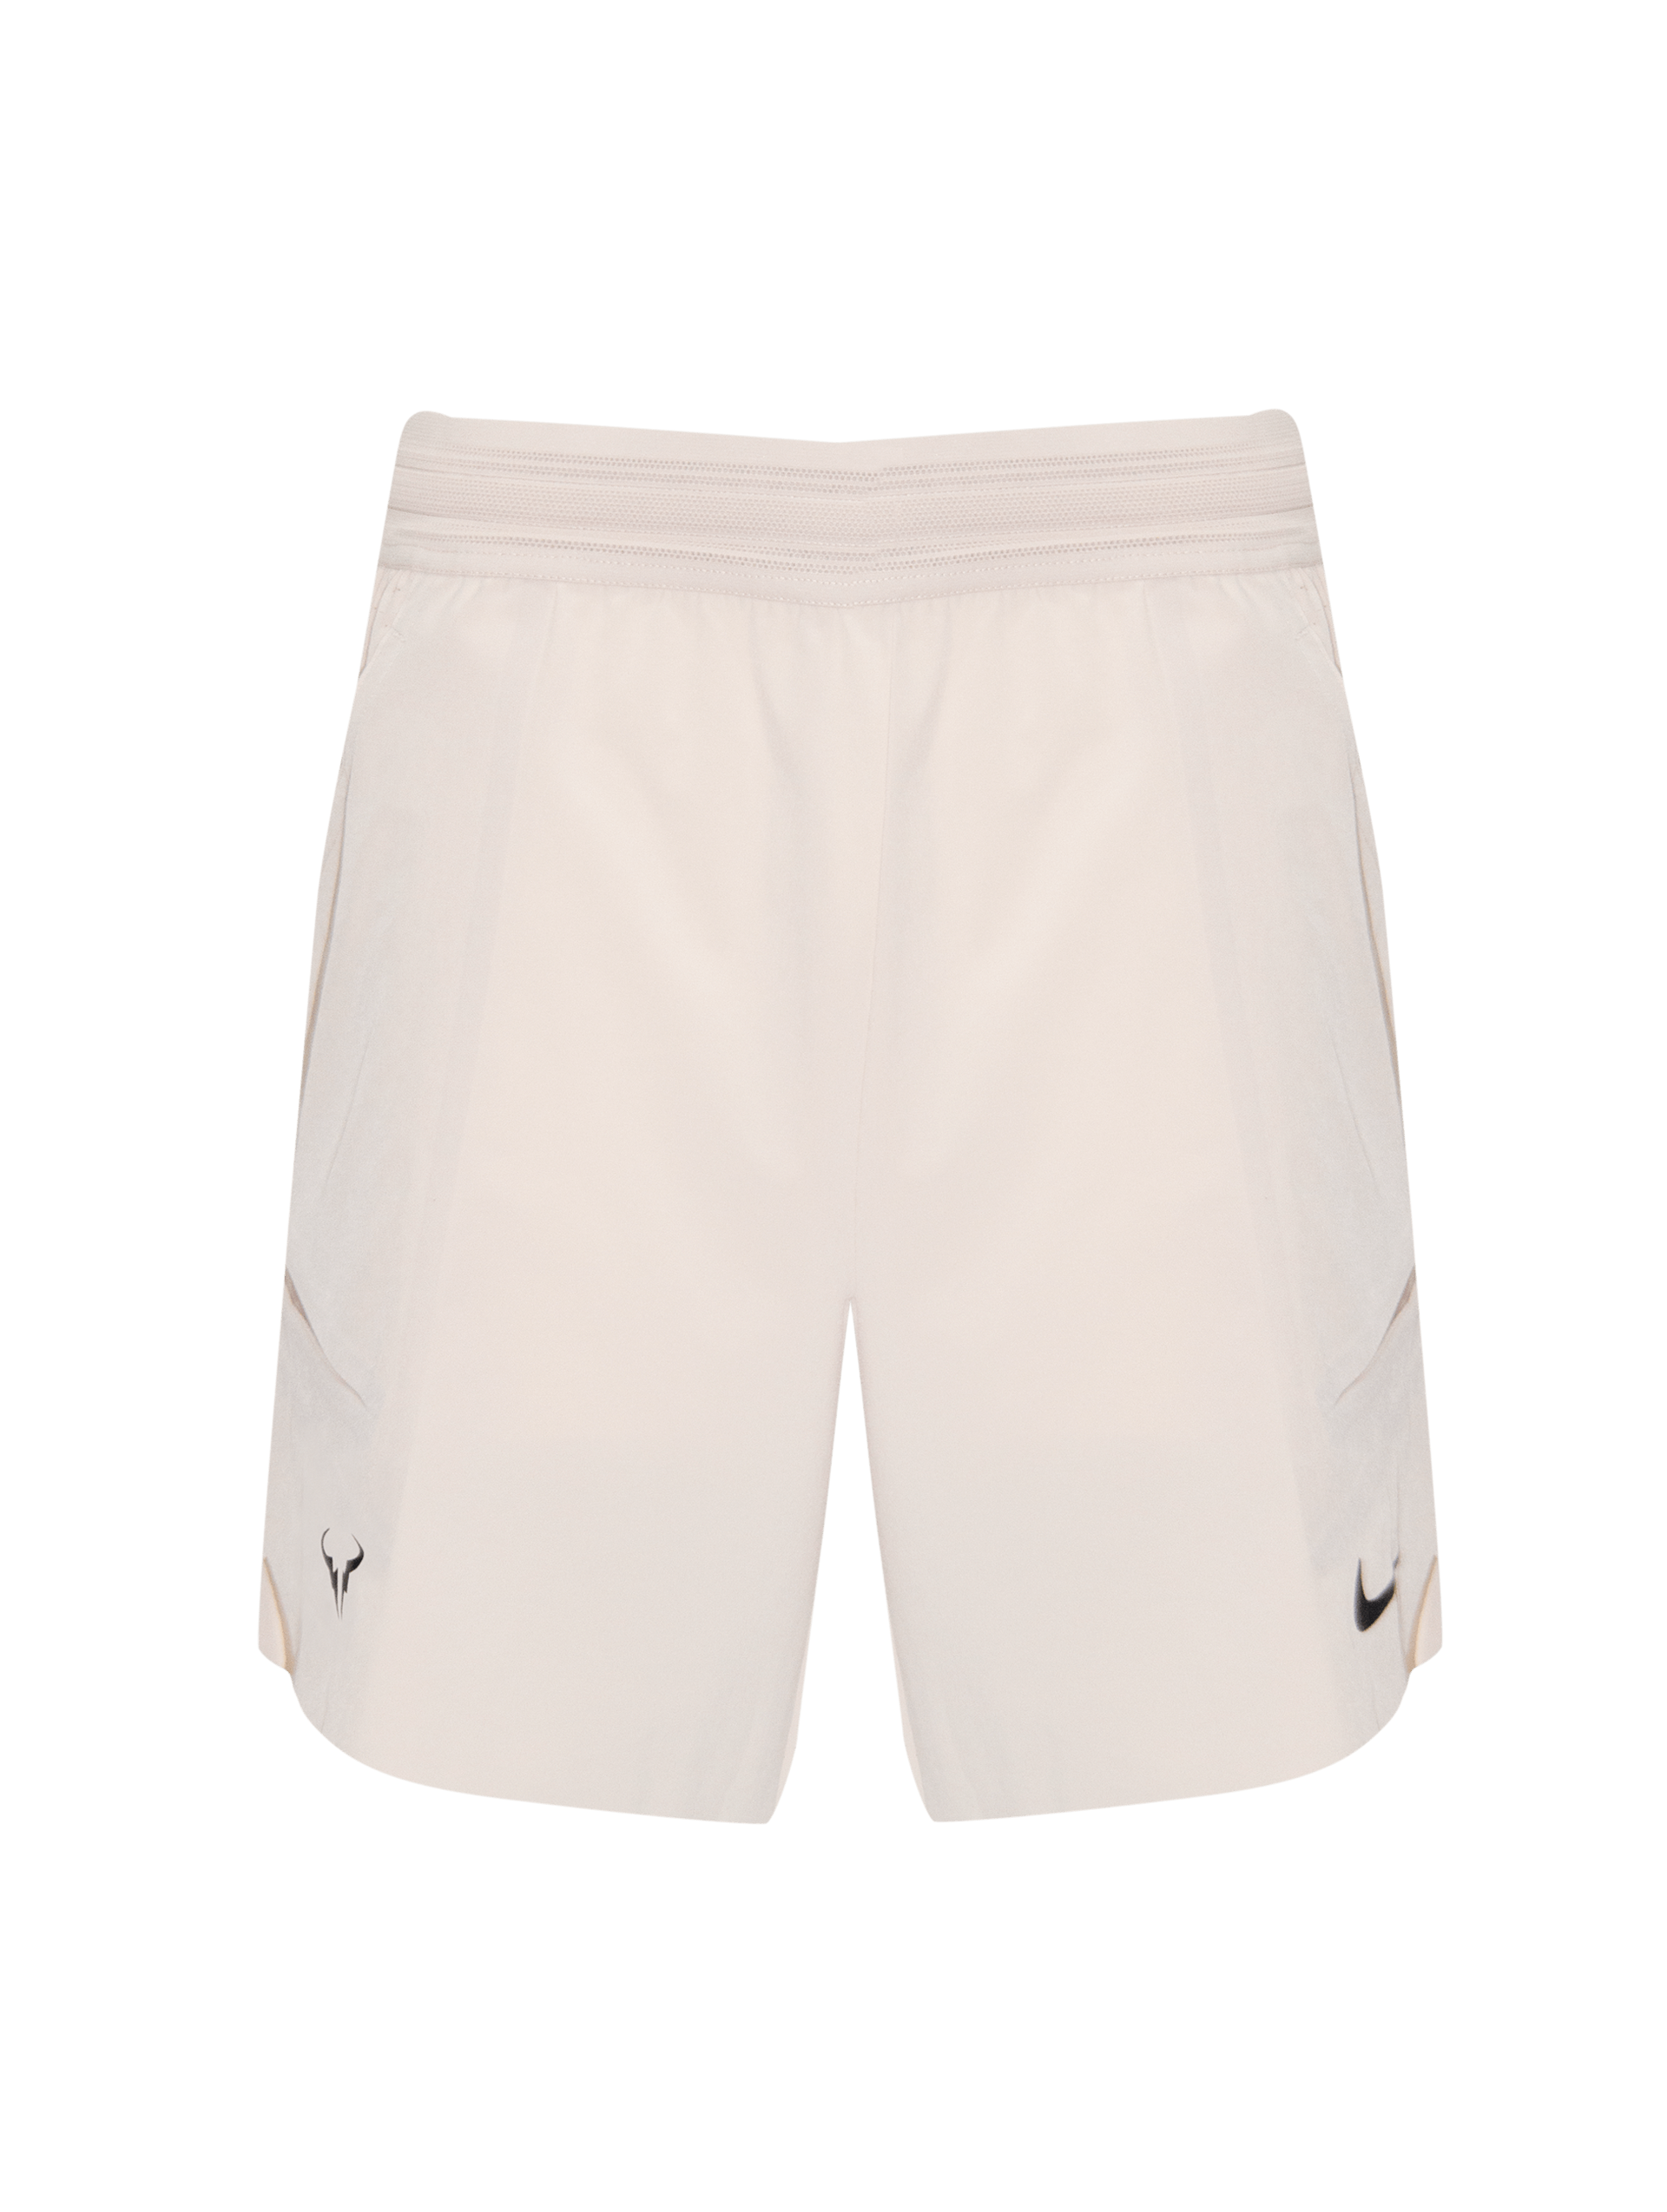 Shorts Nike Masculino Bege